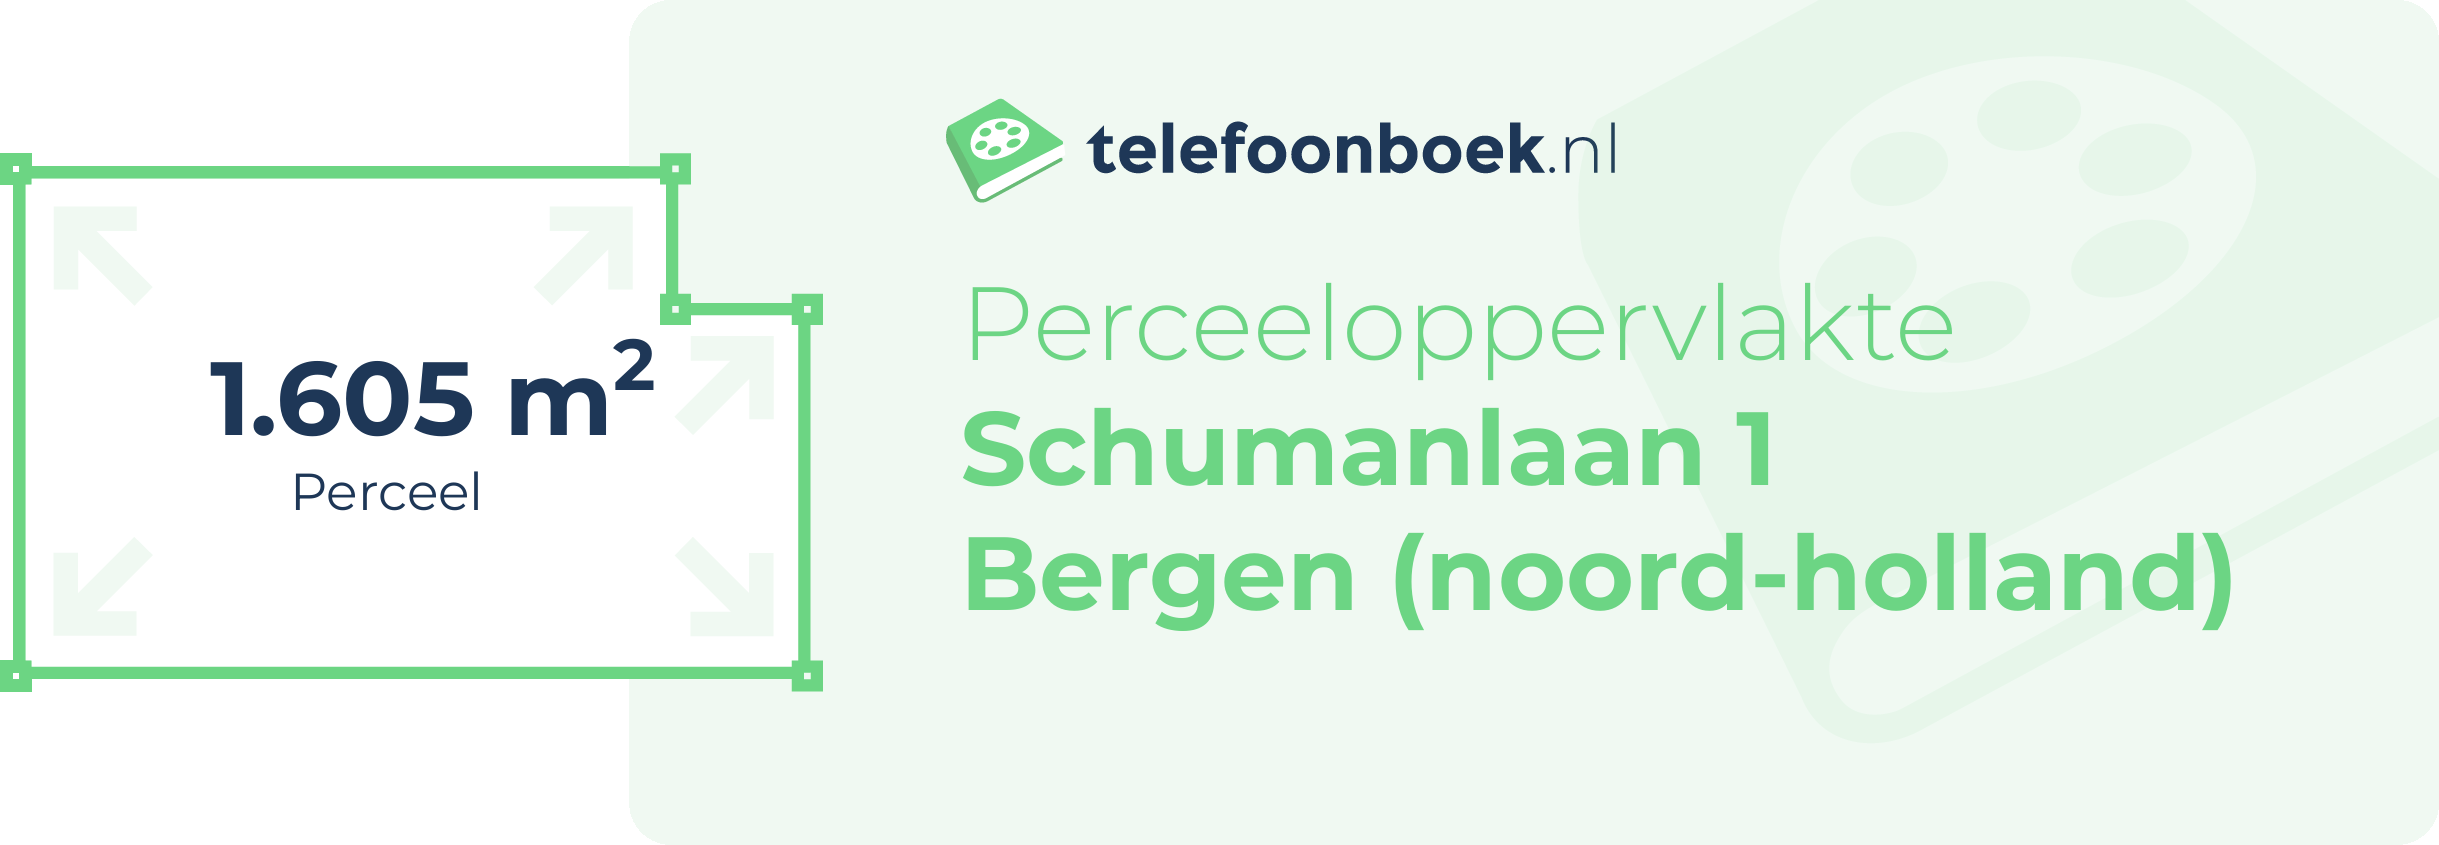 Perceeloppervlakte Schumanlaan 1 Bergen (Noord-Holland)